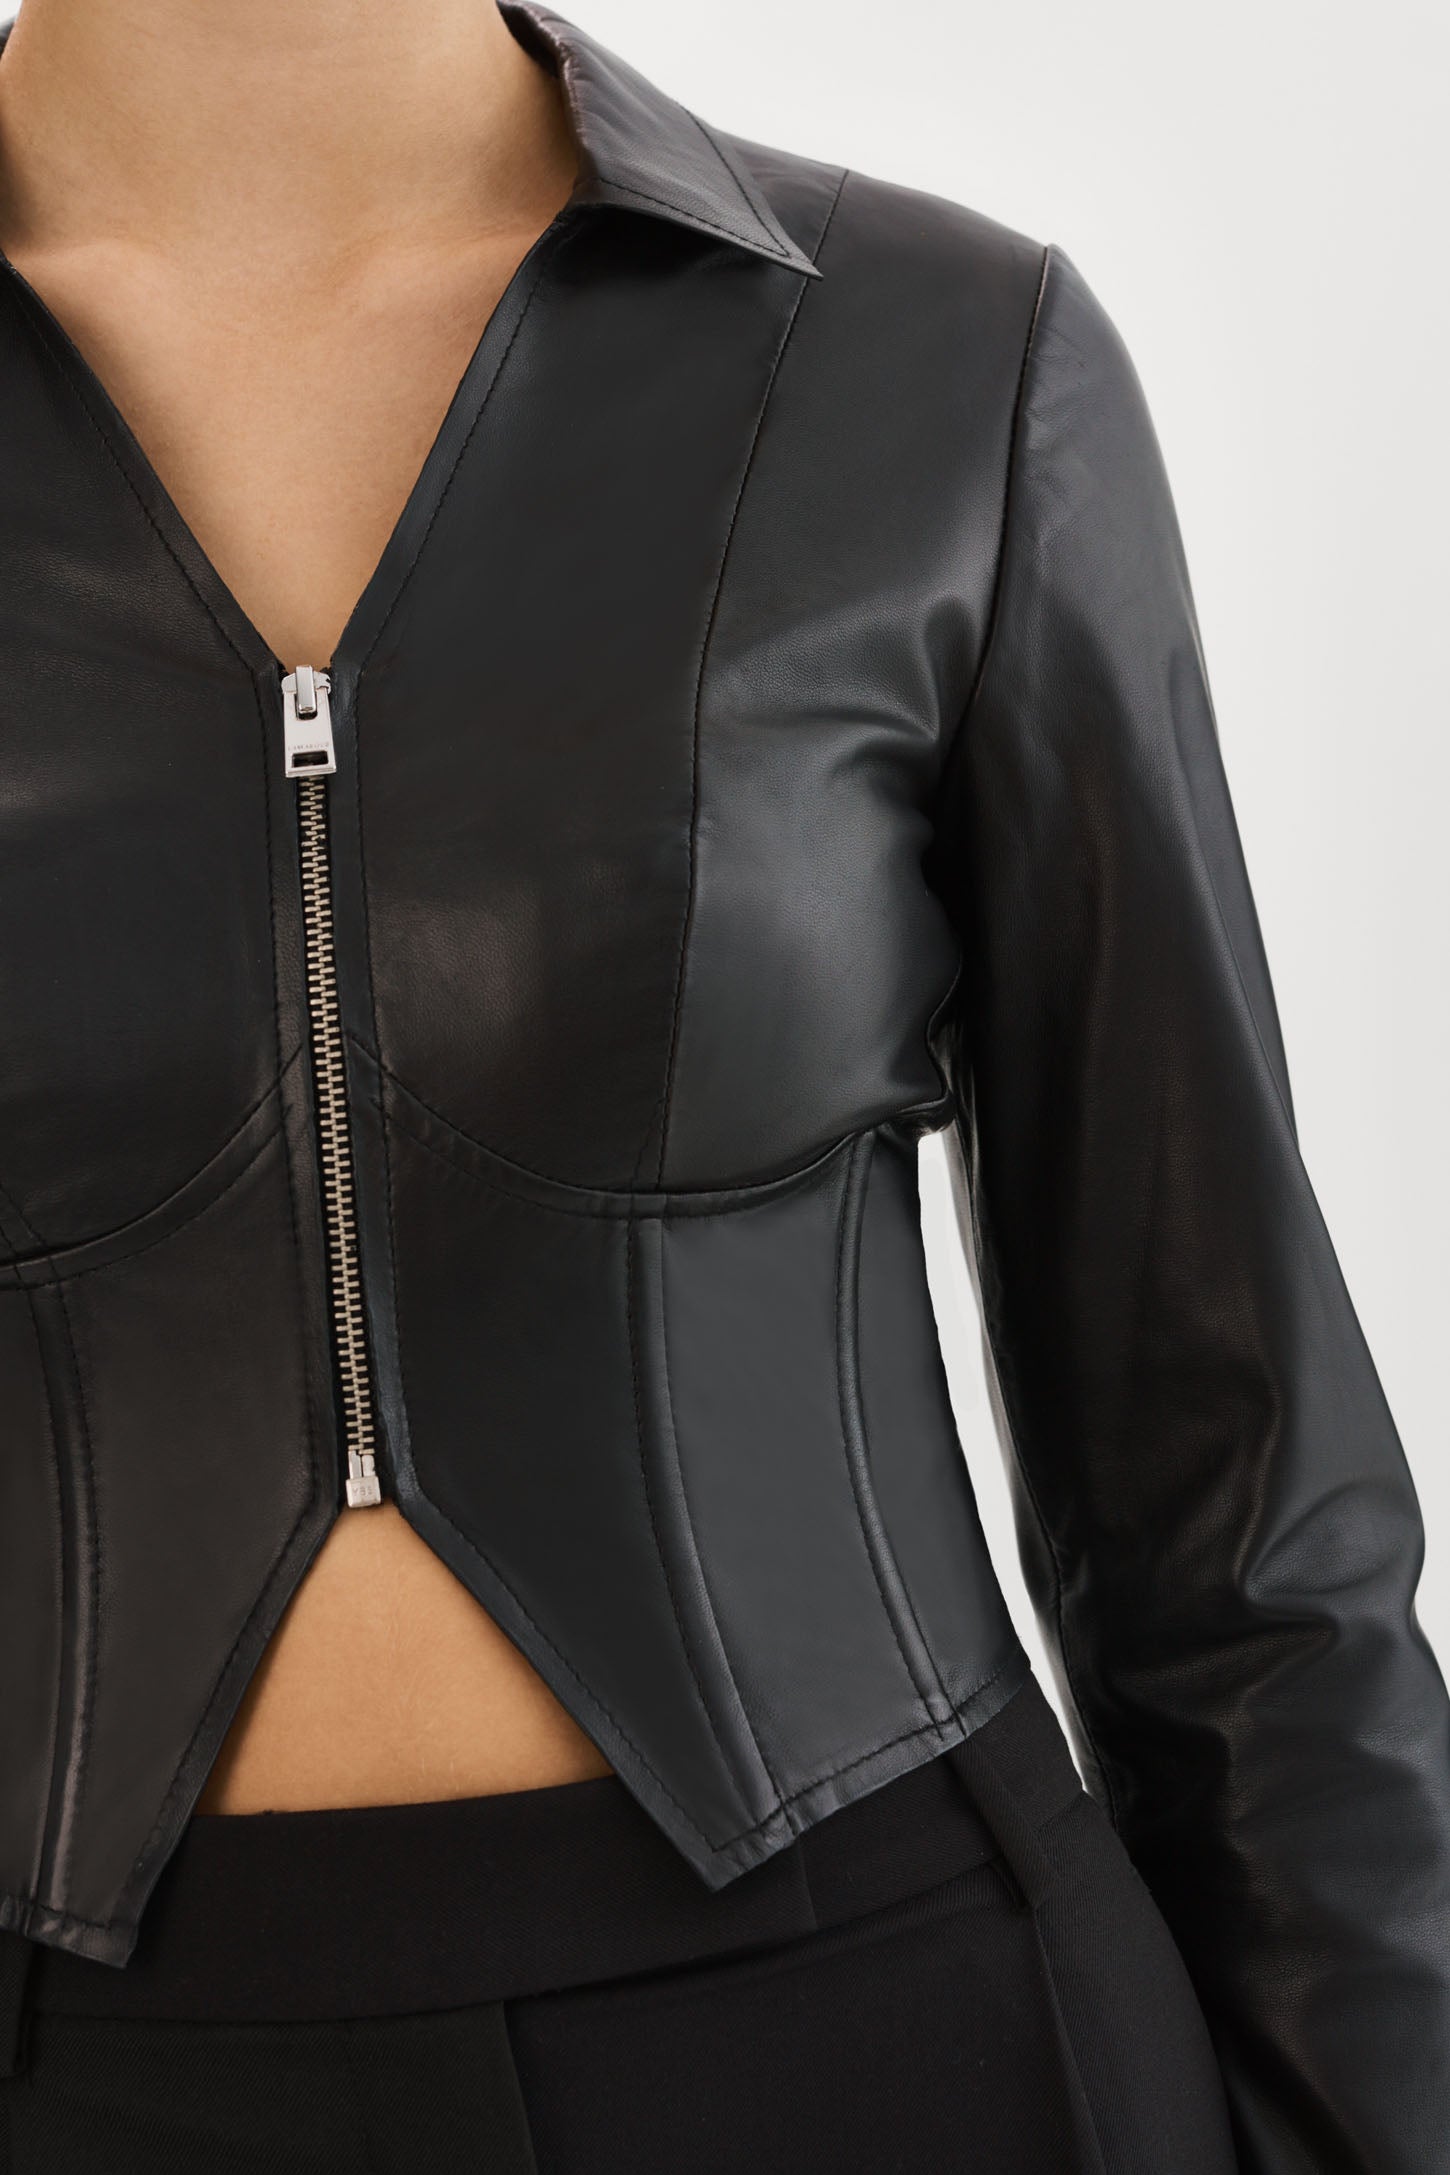 La Marque Leather Under-Bust Corset – Want Boutique Inc.